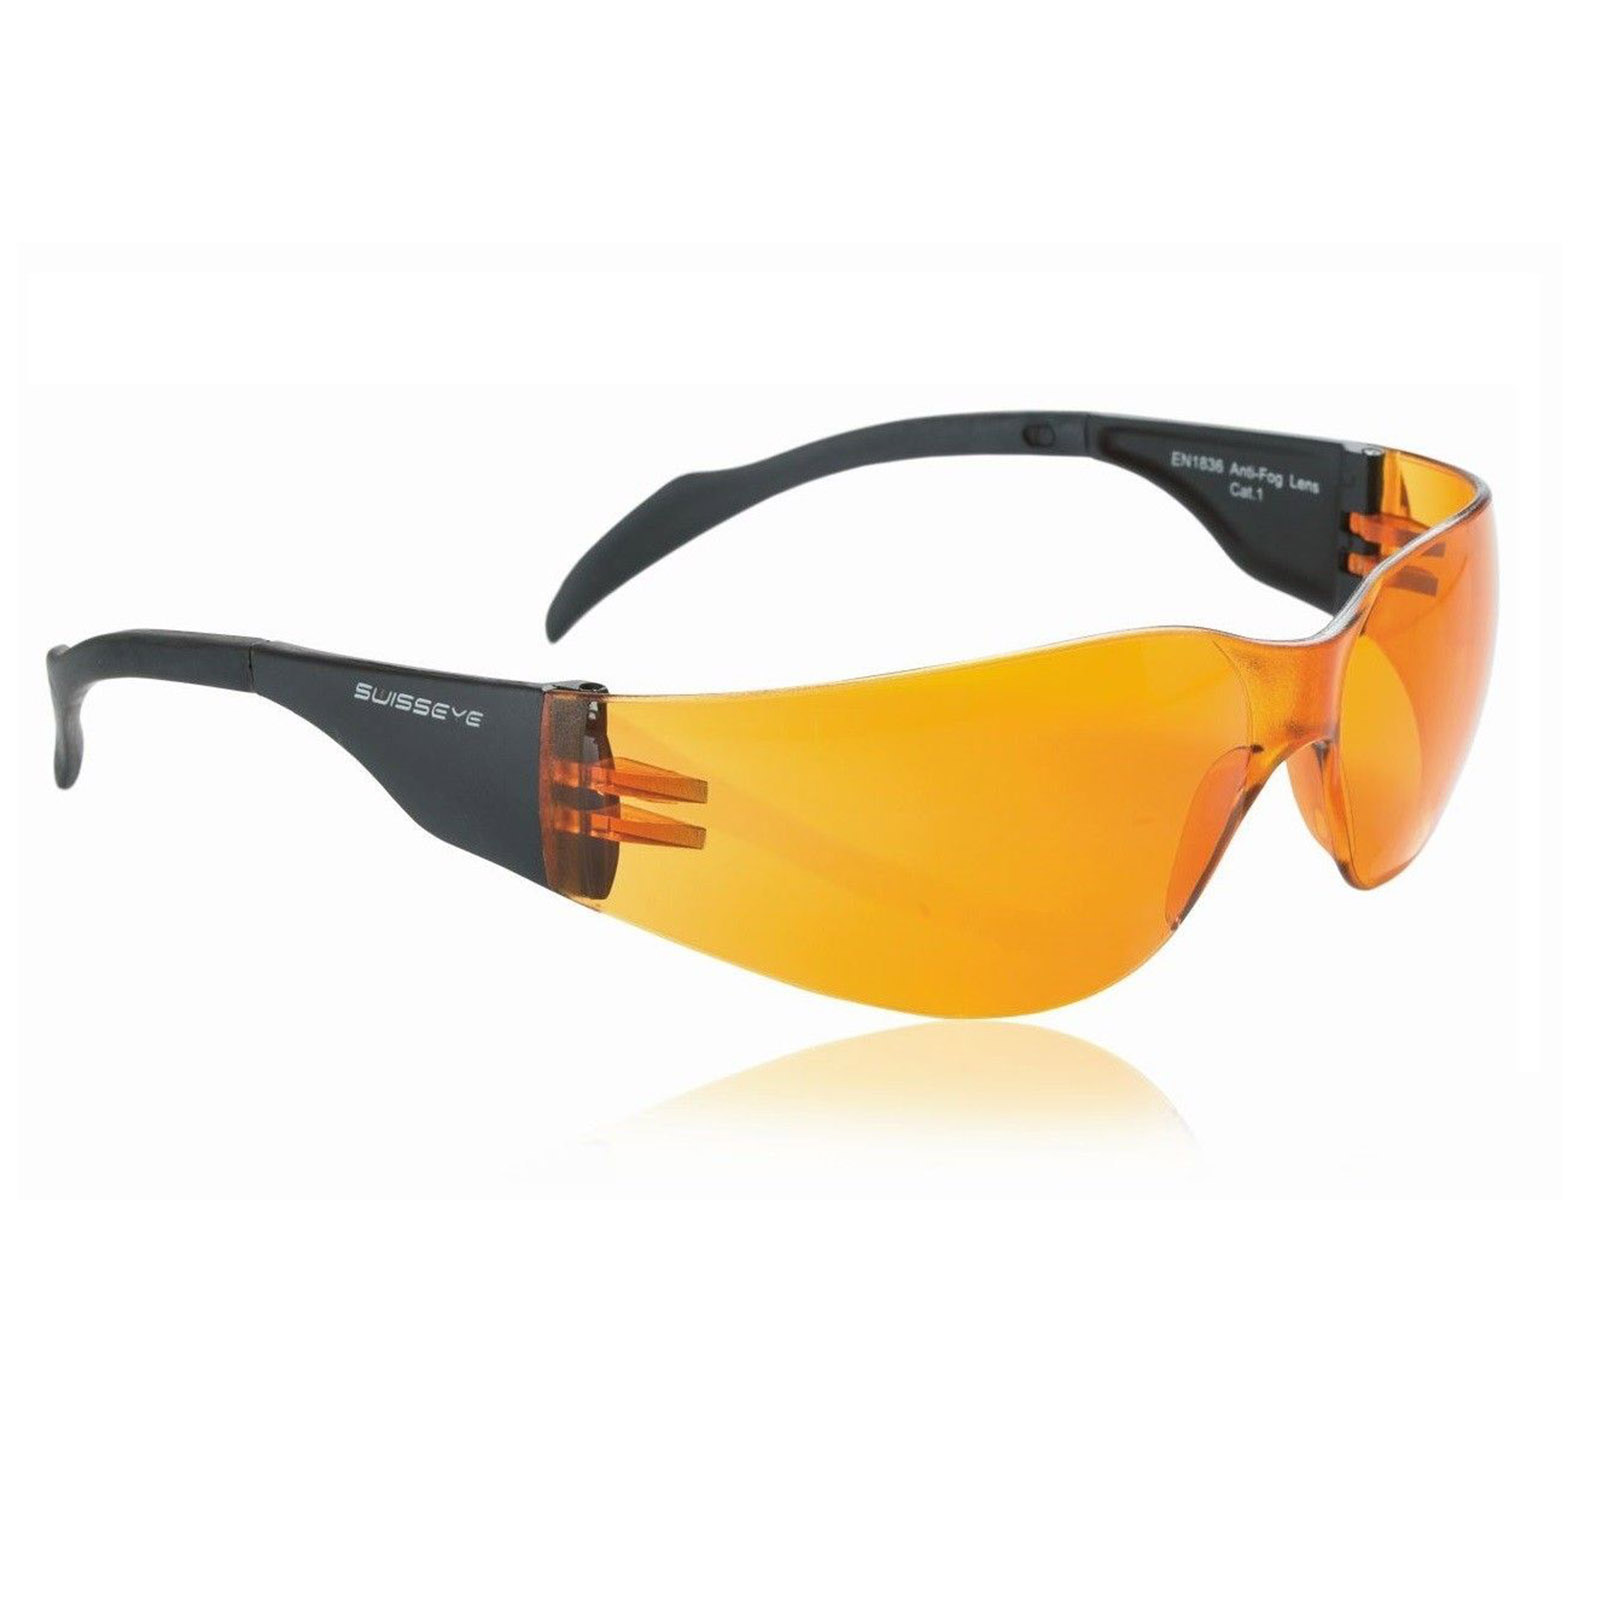 Swisseye Sonnenbrille Outbreak Rahmen schwarz / Polycarbonatscheiben orange